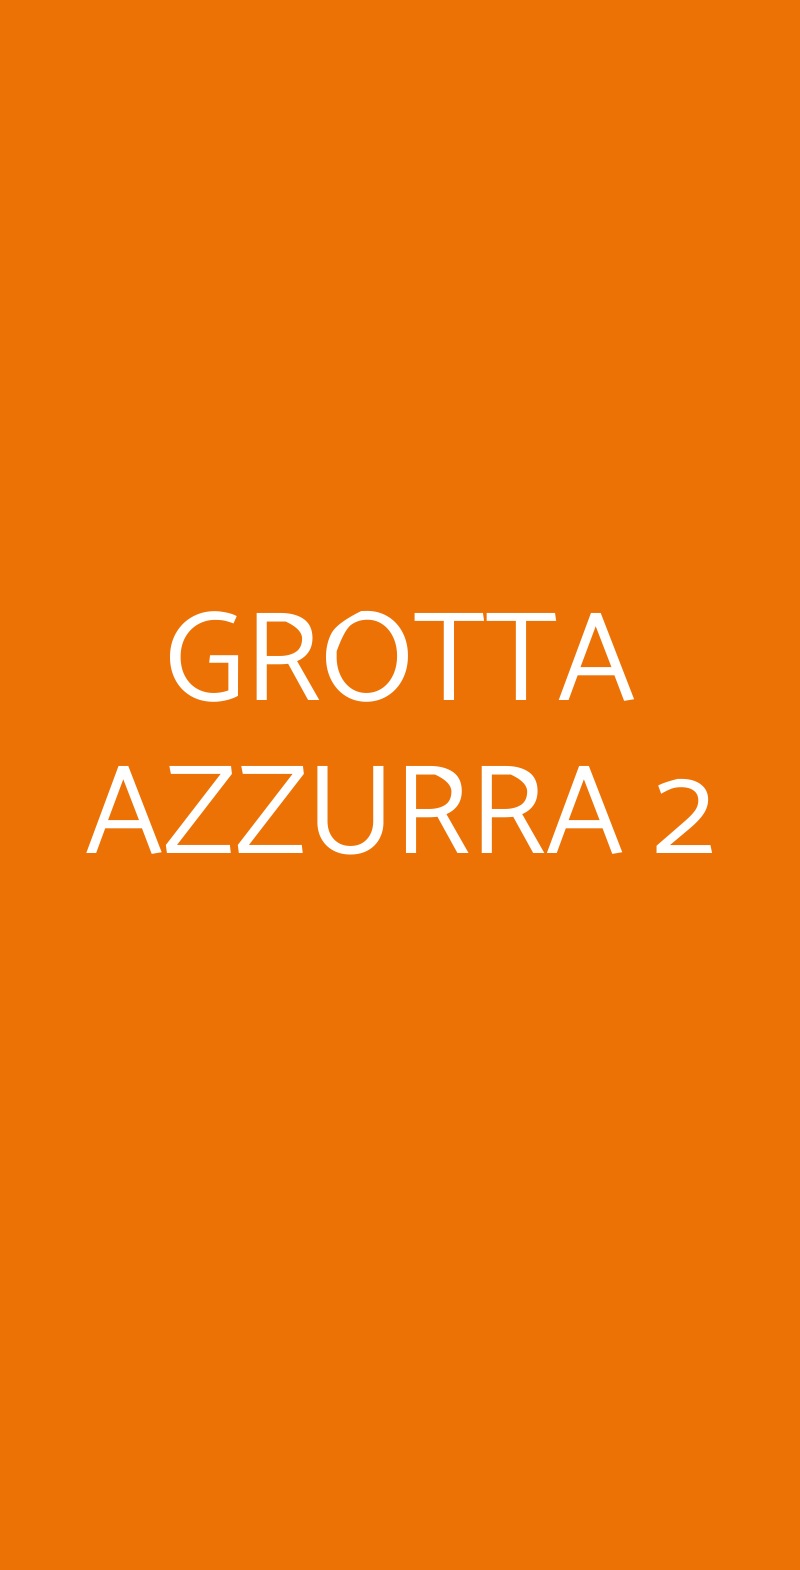 GROTTA AZZURRA 2 Verona menù 1 pagina